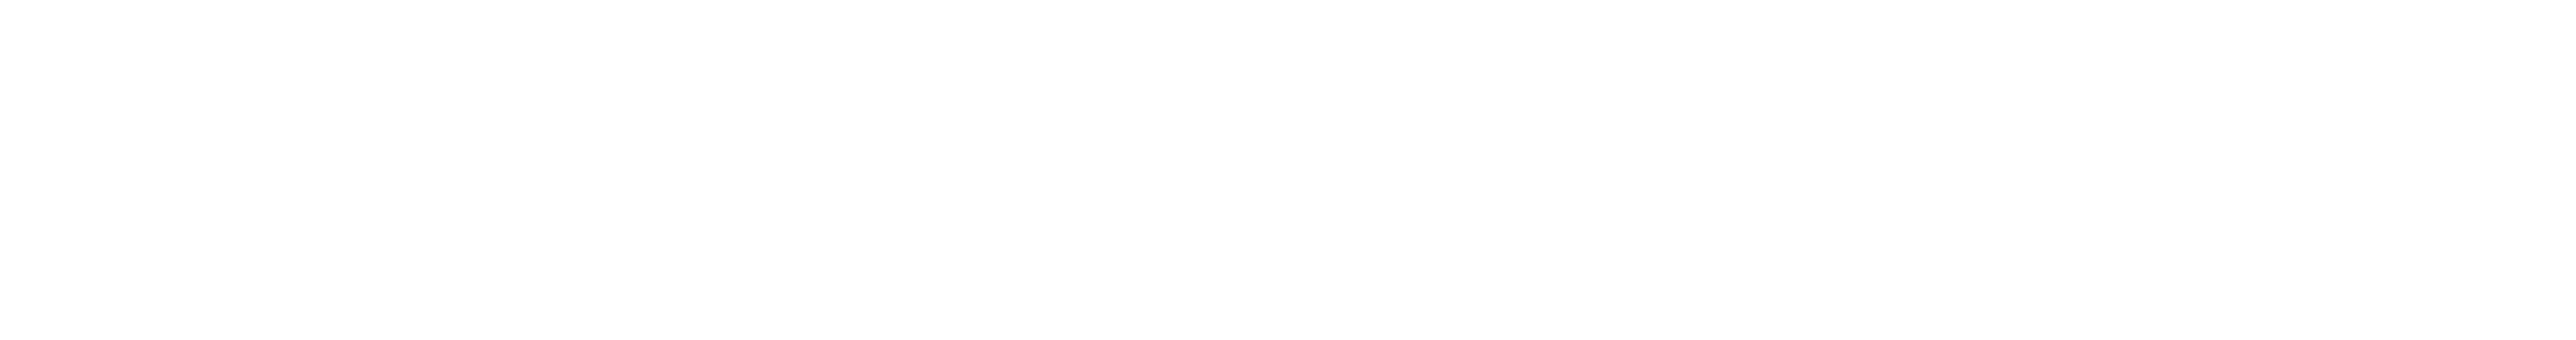 morningstar rating